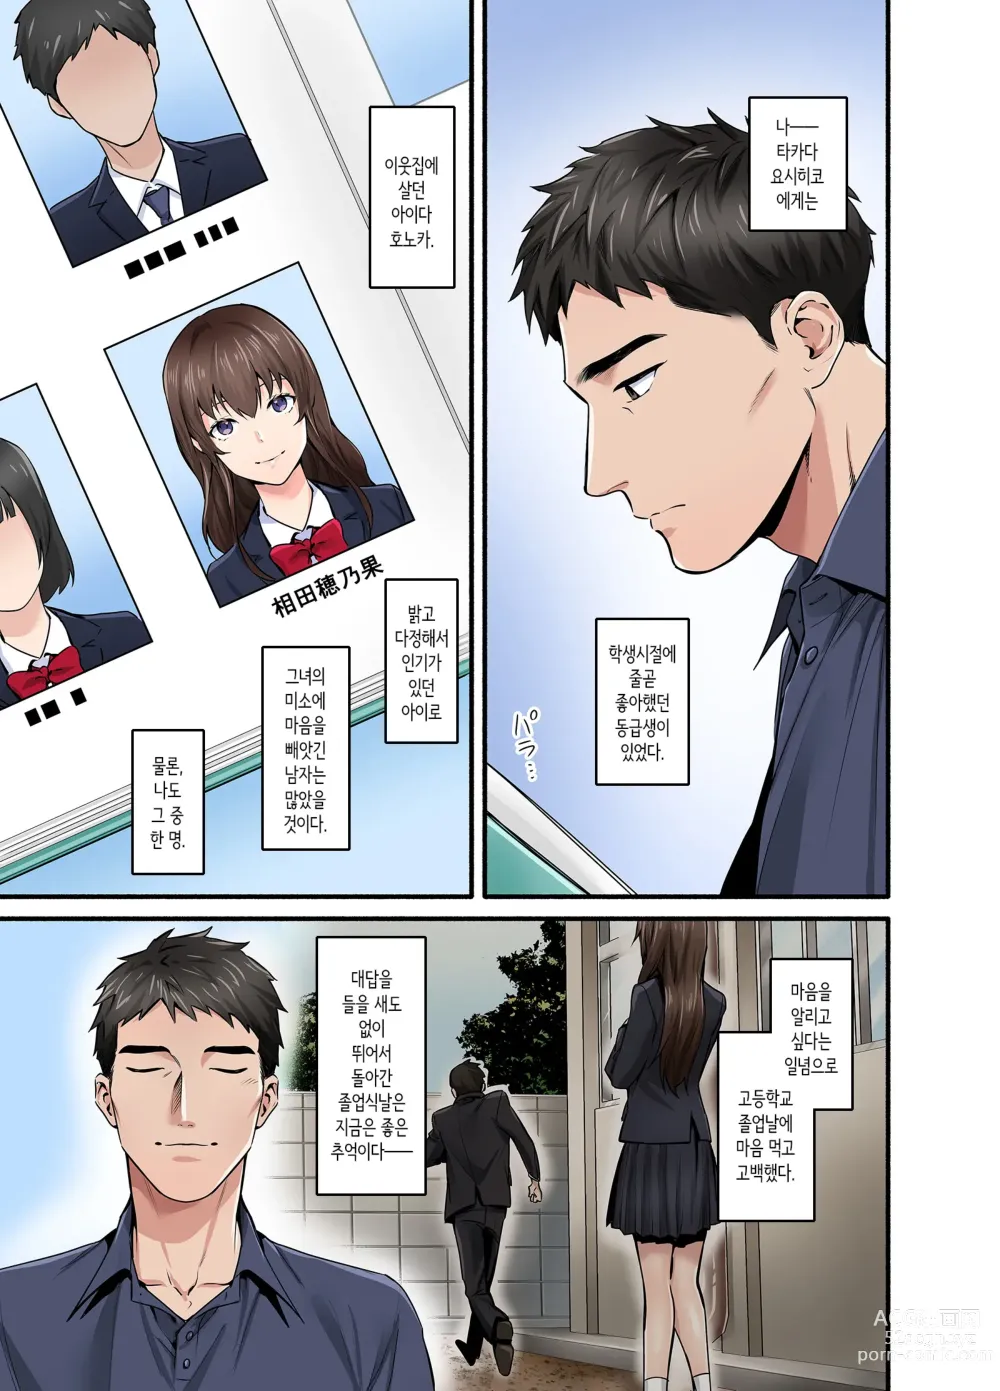 Page 2 of doujinshi 첫사랑의 딸 코믹판 1화